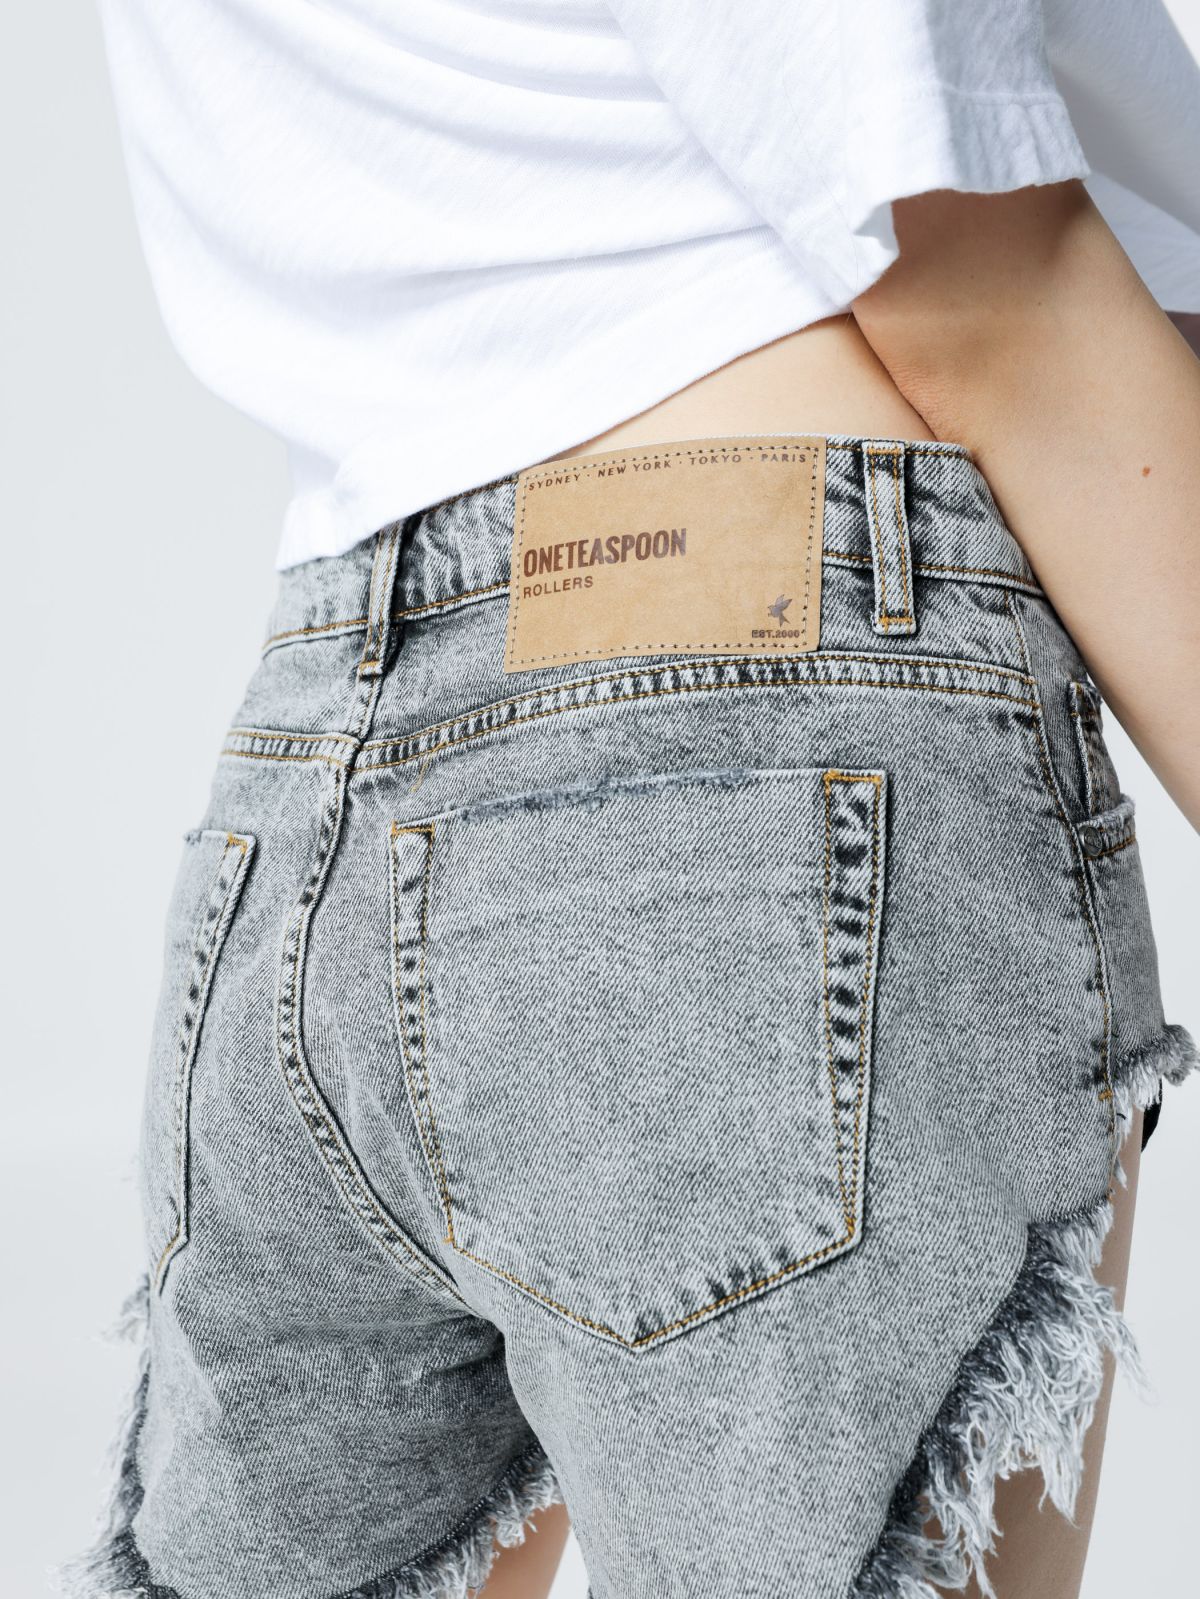  ג'ינס קצר עם סיומת גזורה של ONE TEASPOON